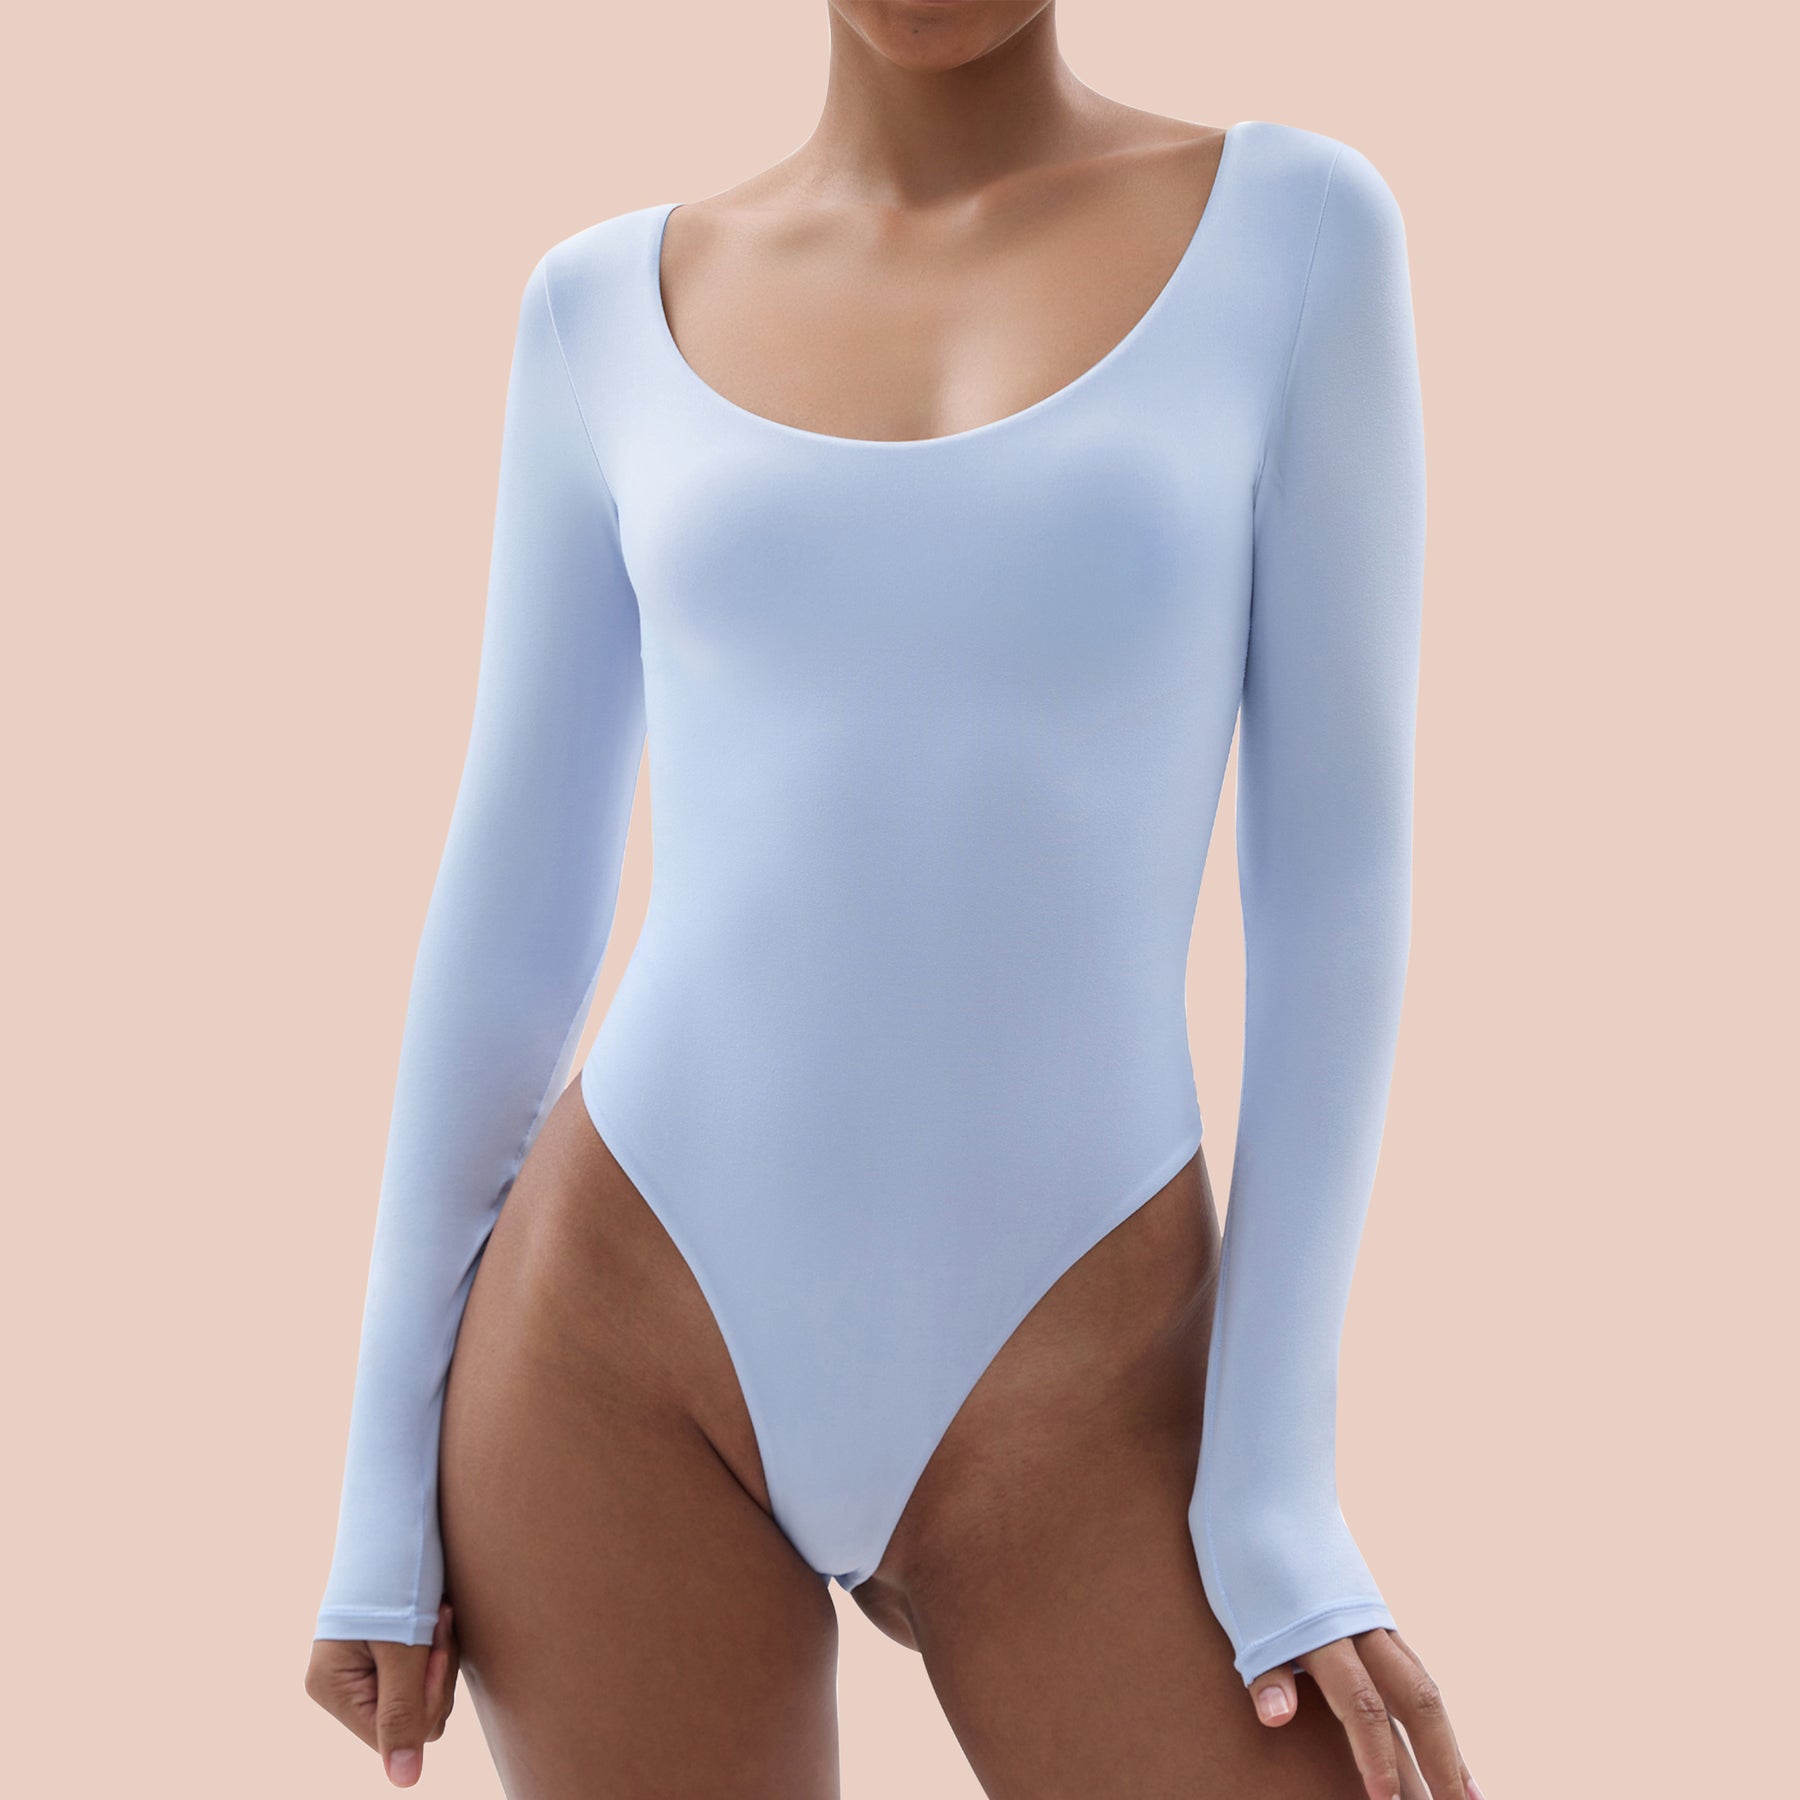  Women's Bodysuit with Scoop Neck Long Sleeve Sexy Tops